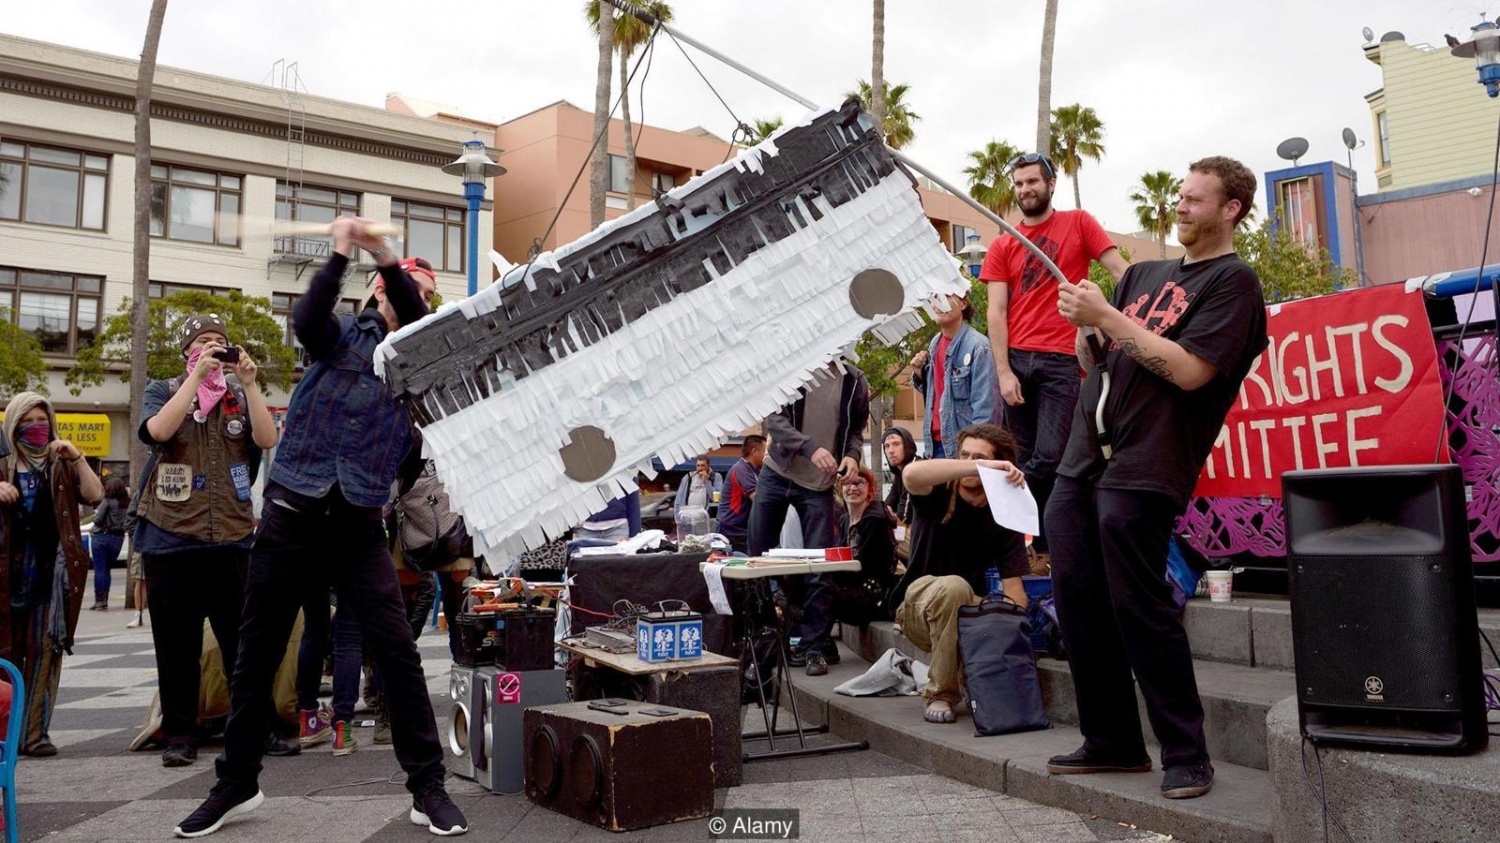 Протестующие атакуют автобус Google piñata в Сан-Франциско в 2013 году (Credit: Alamy)